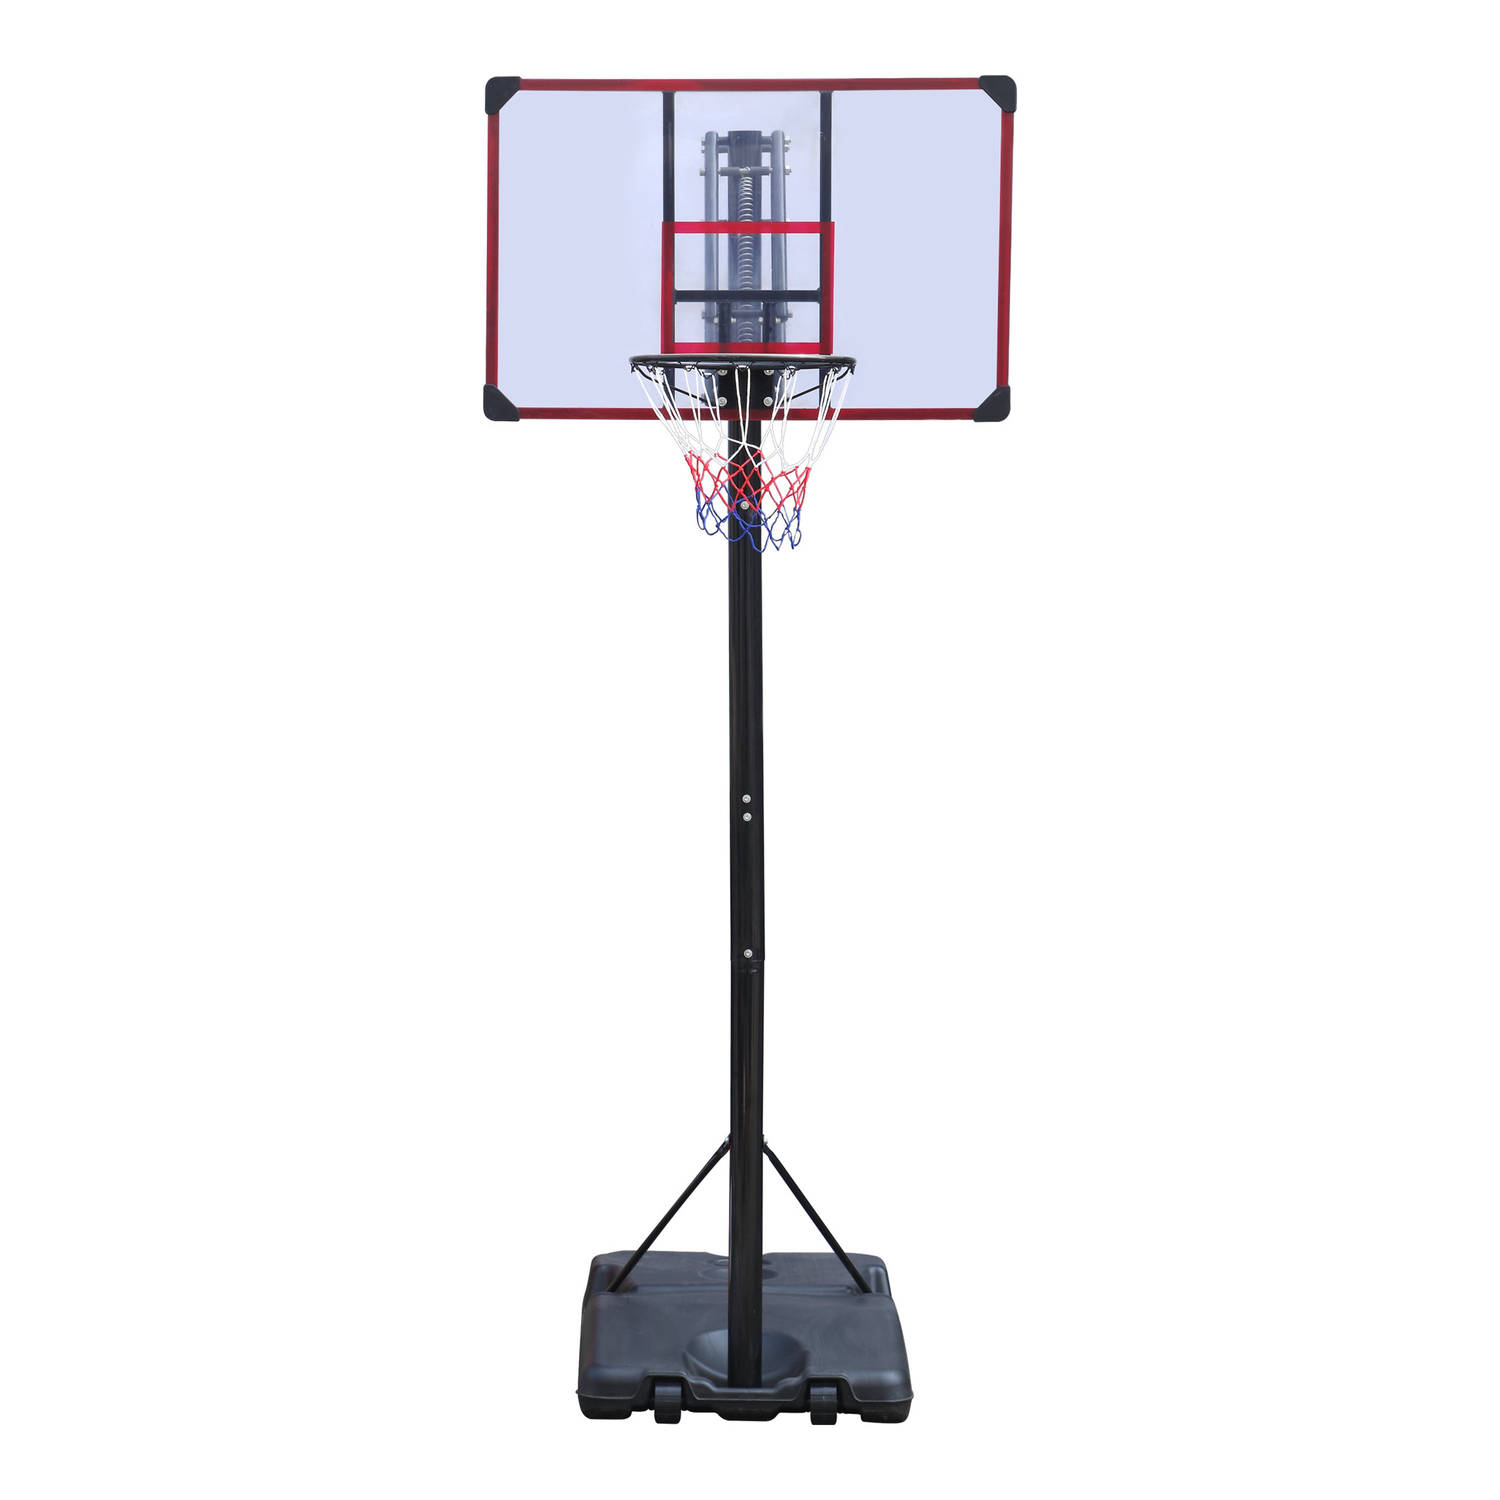 Engelhart Basketbalpaal verstelbaar 270-305 cm met standaard Basketbalstandaard mobiel & verrijdbaar